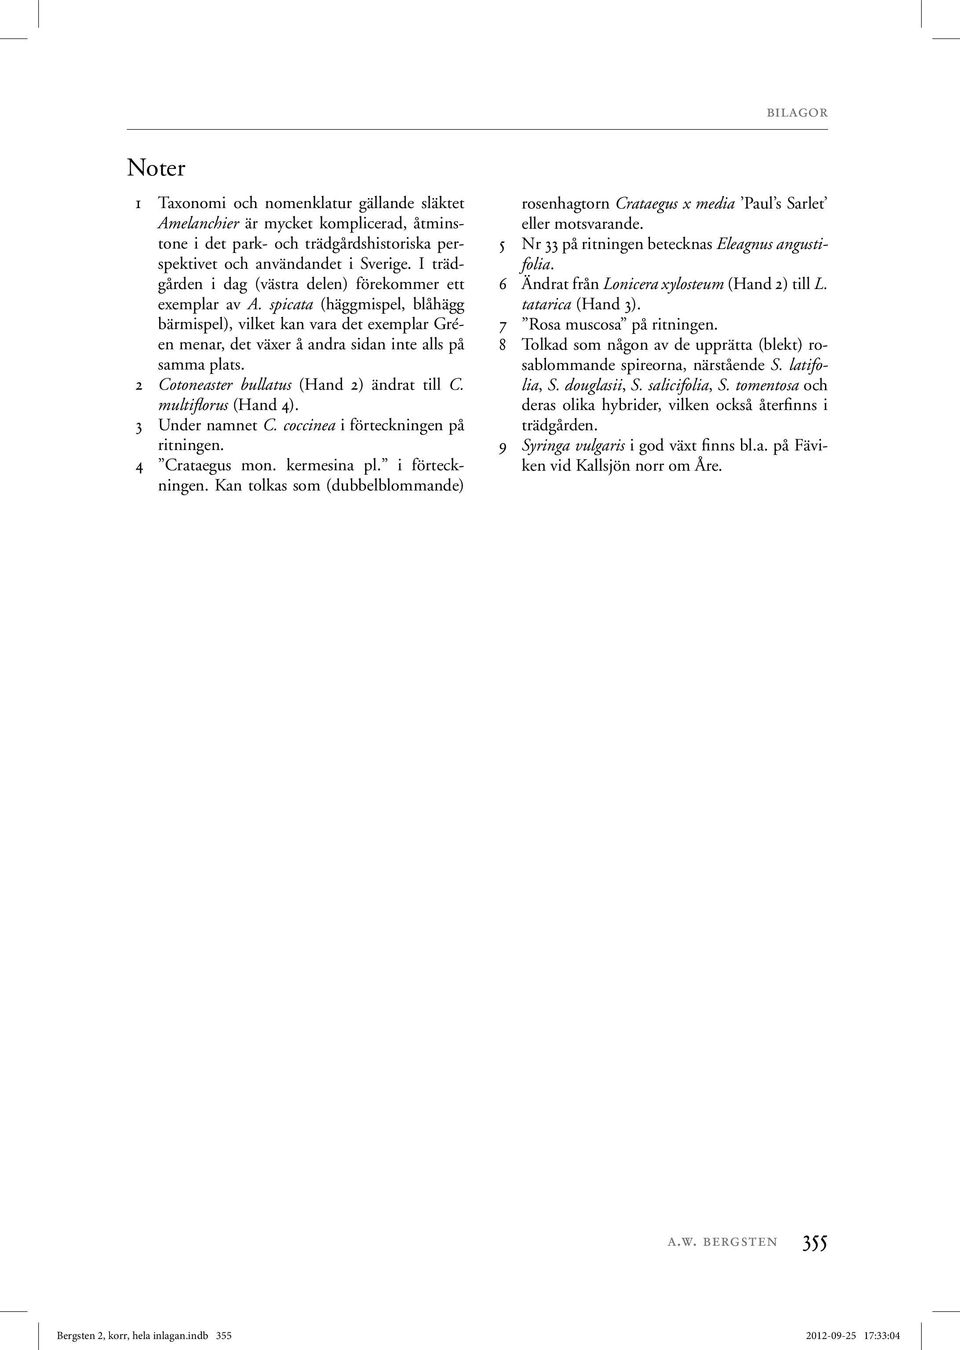 2 Cotoneaster bullatus (Hand 2) ändrat till C. multiflorus (Hand 4). 3 Under namnet C. coccinea i förteckningen 